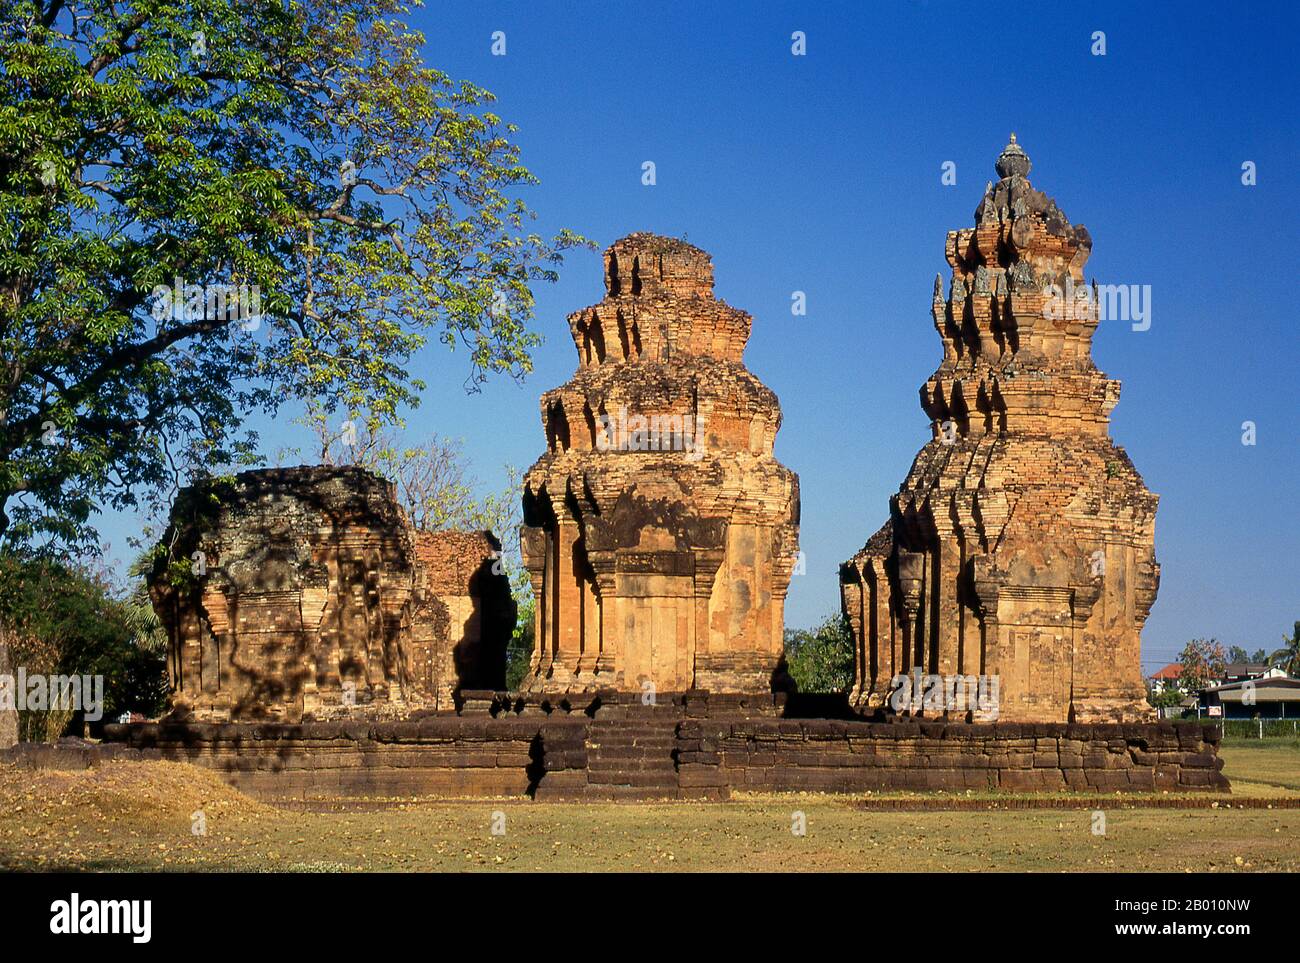 Thailand: Die Ziegelstangen von Prasat Sikhoraphum, Surin Provinz, Nordostthailand. Prasat Sikhoraphum ist ein Khmer Hindu-Tempel, der im 12th. Jahrhundert von König Suryavarman II. (R. 1113 - 1150). Prasat Sikhoraphum stammt aus dem frühen 12th. Jahrhundert und wurde wunderschön restauriert. Es besteht aus fünf Ziegelstangen auf einer quadratischen Lateritplattform, die von mit Lilie gefüllten Teichen umgeben ist. Der Türsturz und die Säulen des zentralen Prangs sind wunderschön mit himmlisch tanzenden Mädchen oder apsara und anderen Szenen aus der hinduistischen Mythologie geschnitzt. Stockfoto